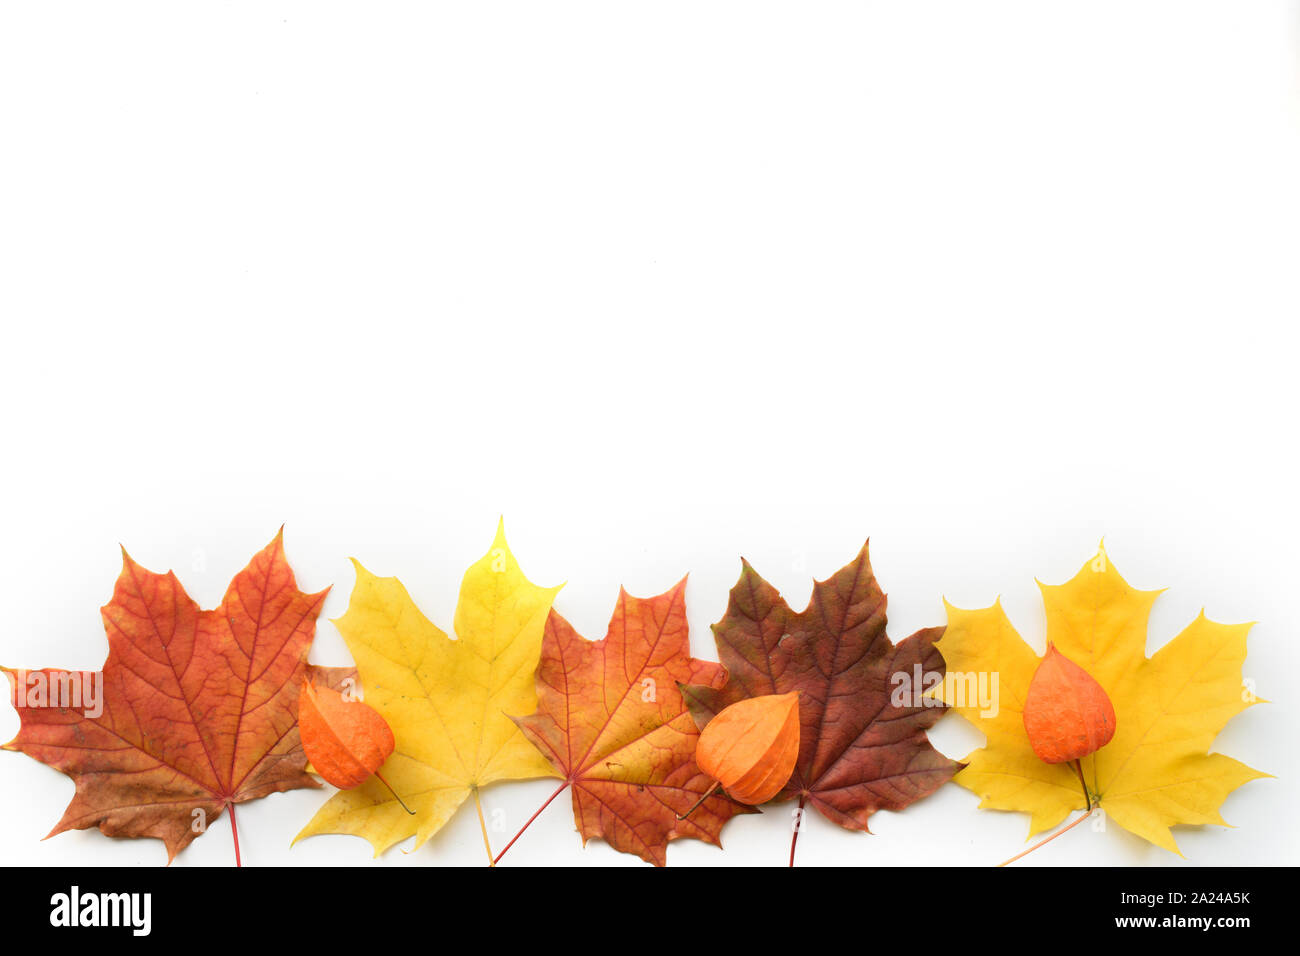 Herbst Zusammensetzung der Rahmen aus Ahorn Blätter und Physalis. Flach, Ansicht von oben Stockfoto